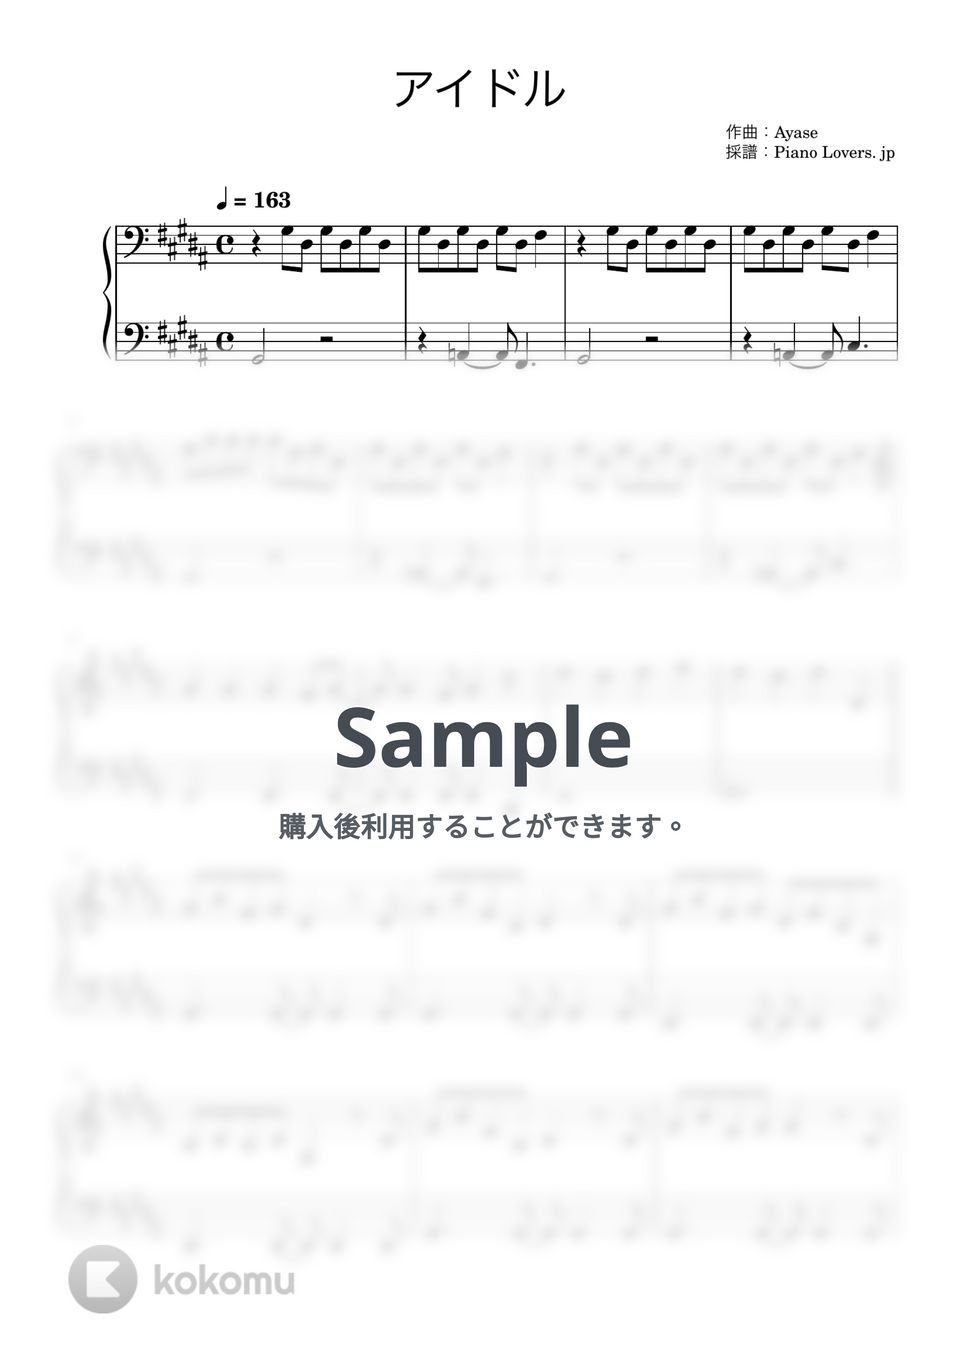 YOASOBI - アイドル (推しの子) by Piano Lovers. jp